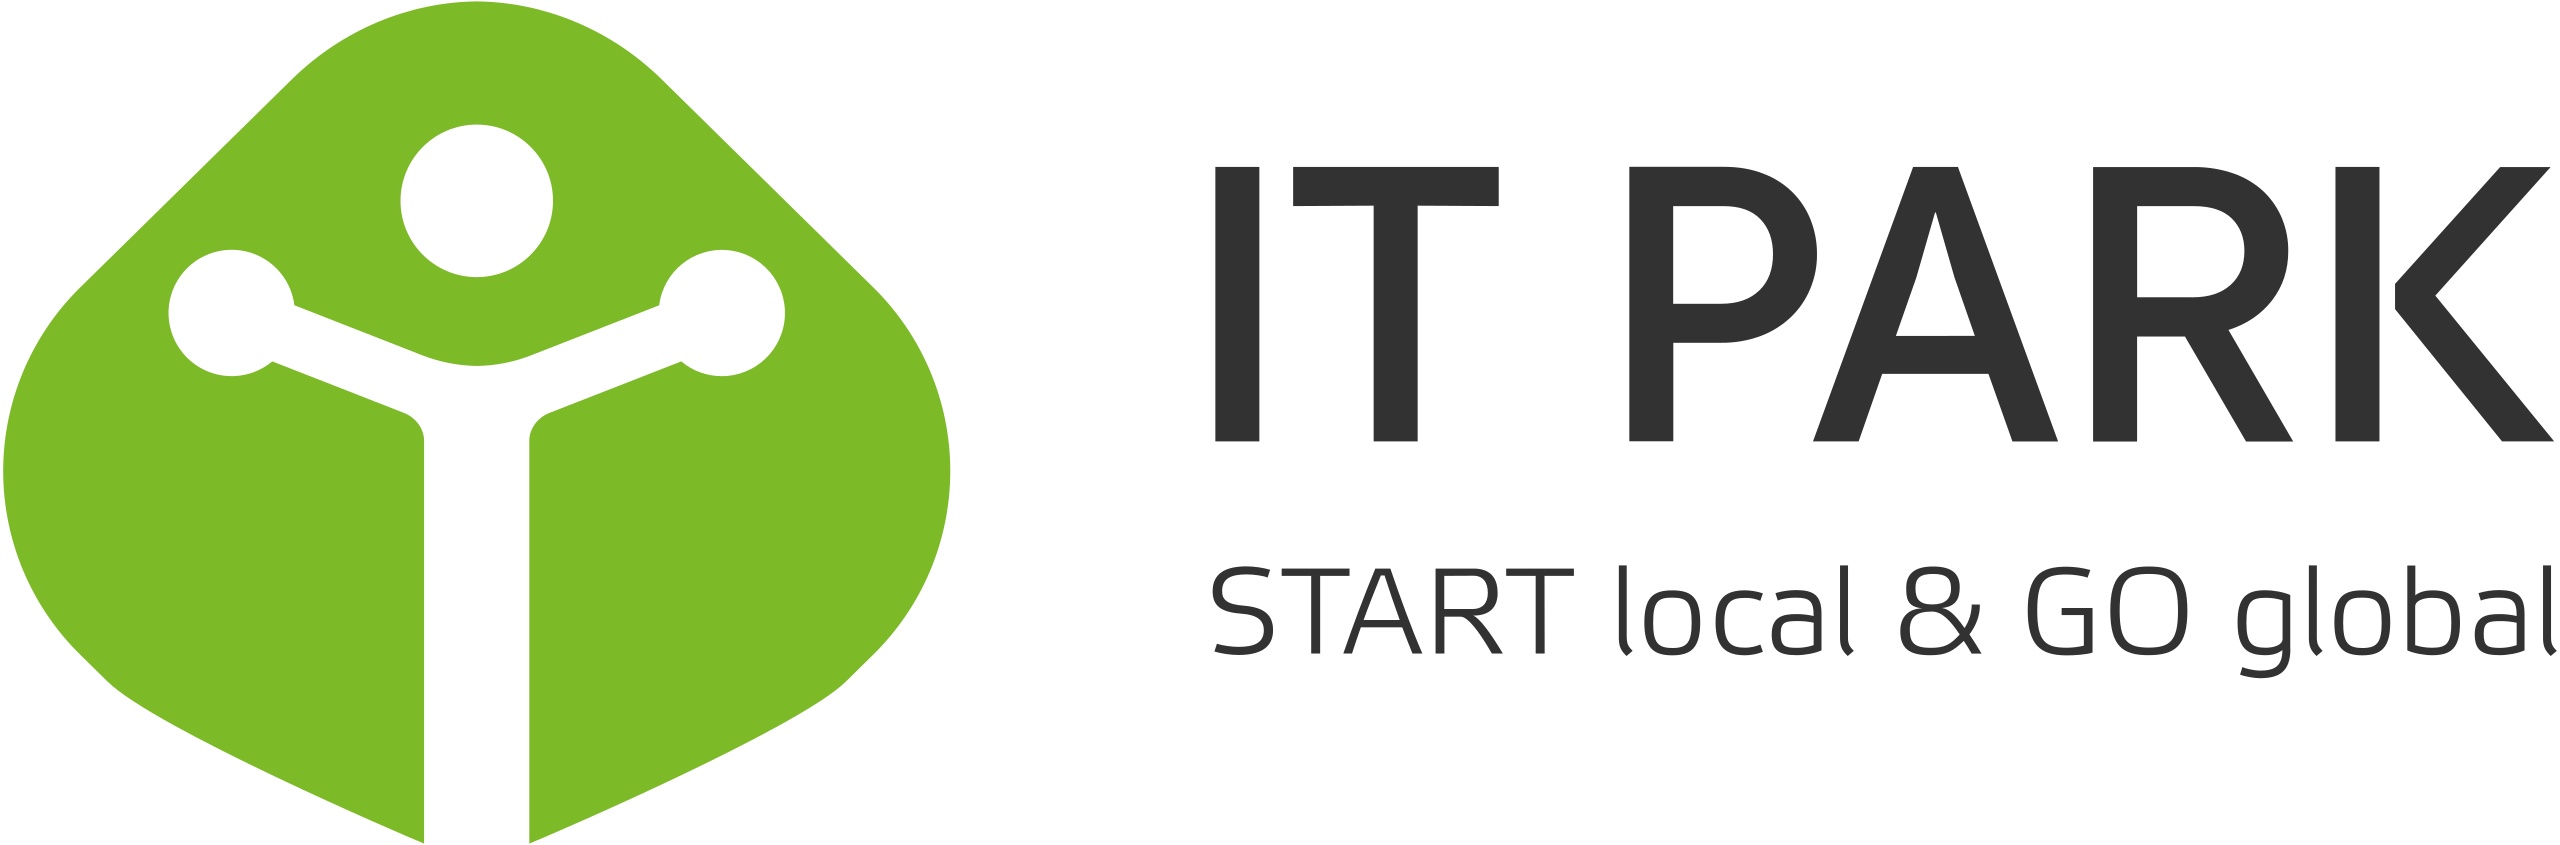 itpark-logo